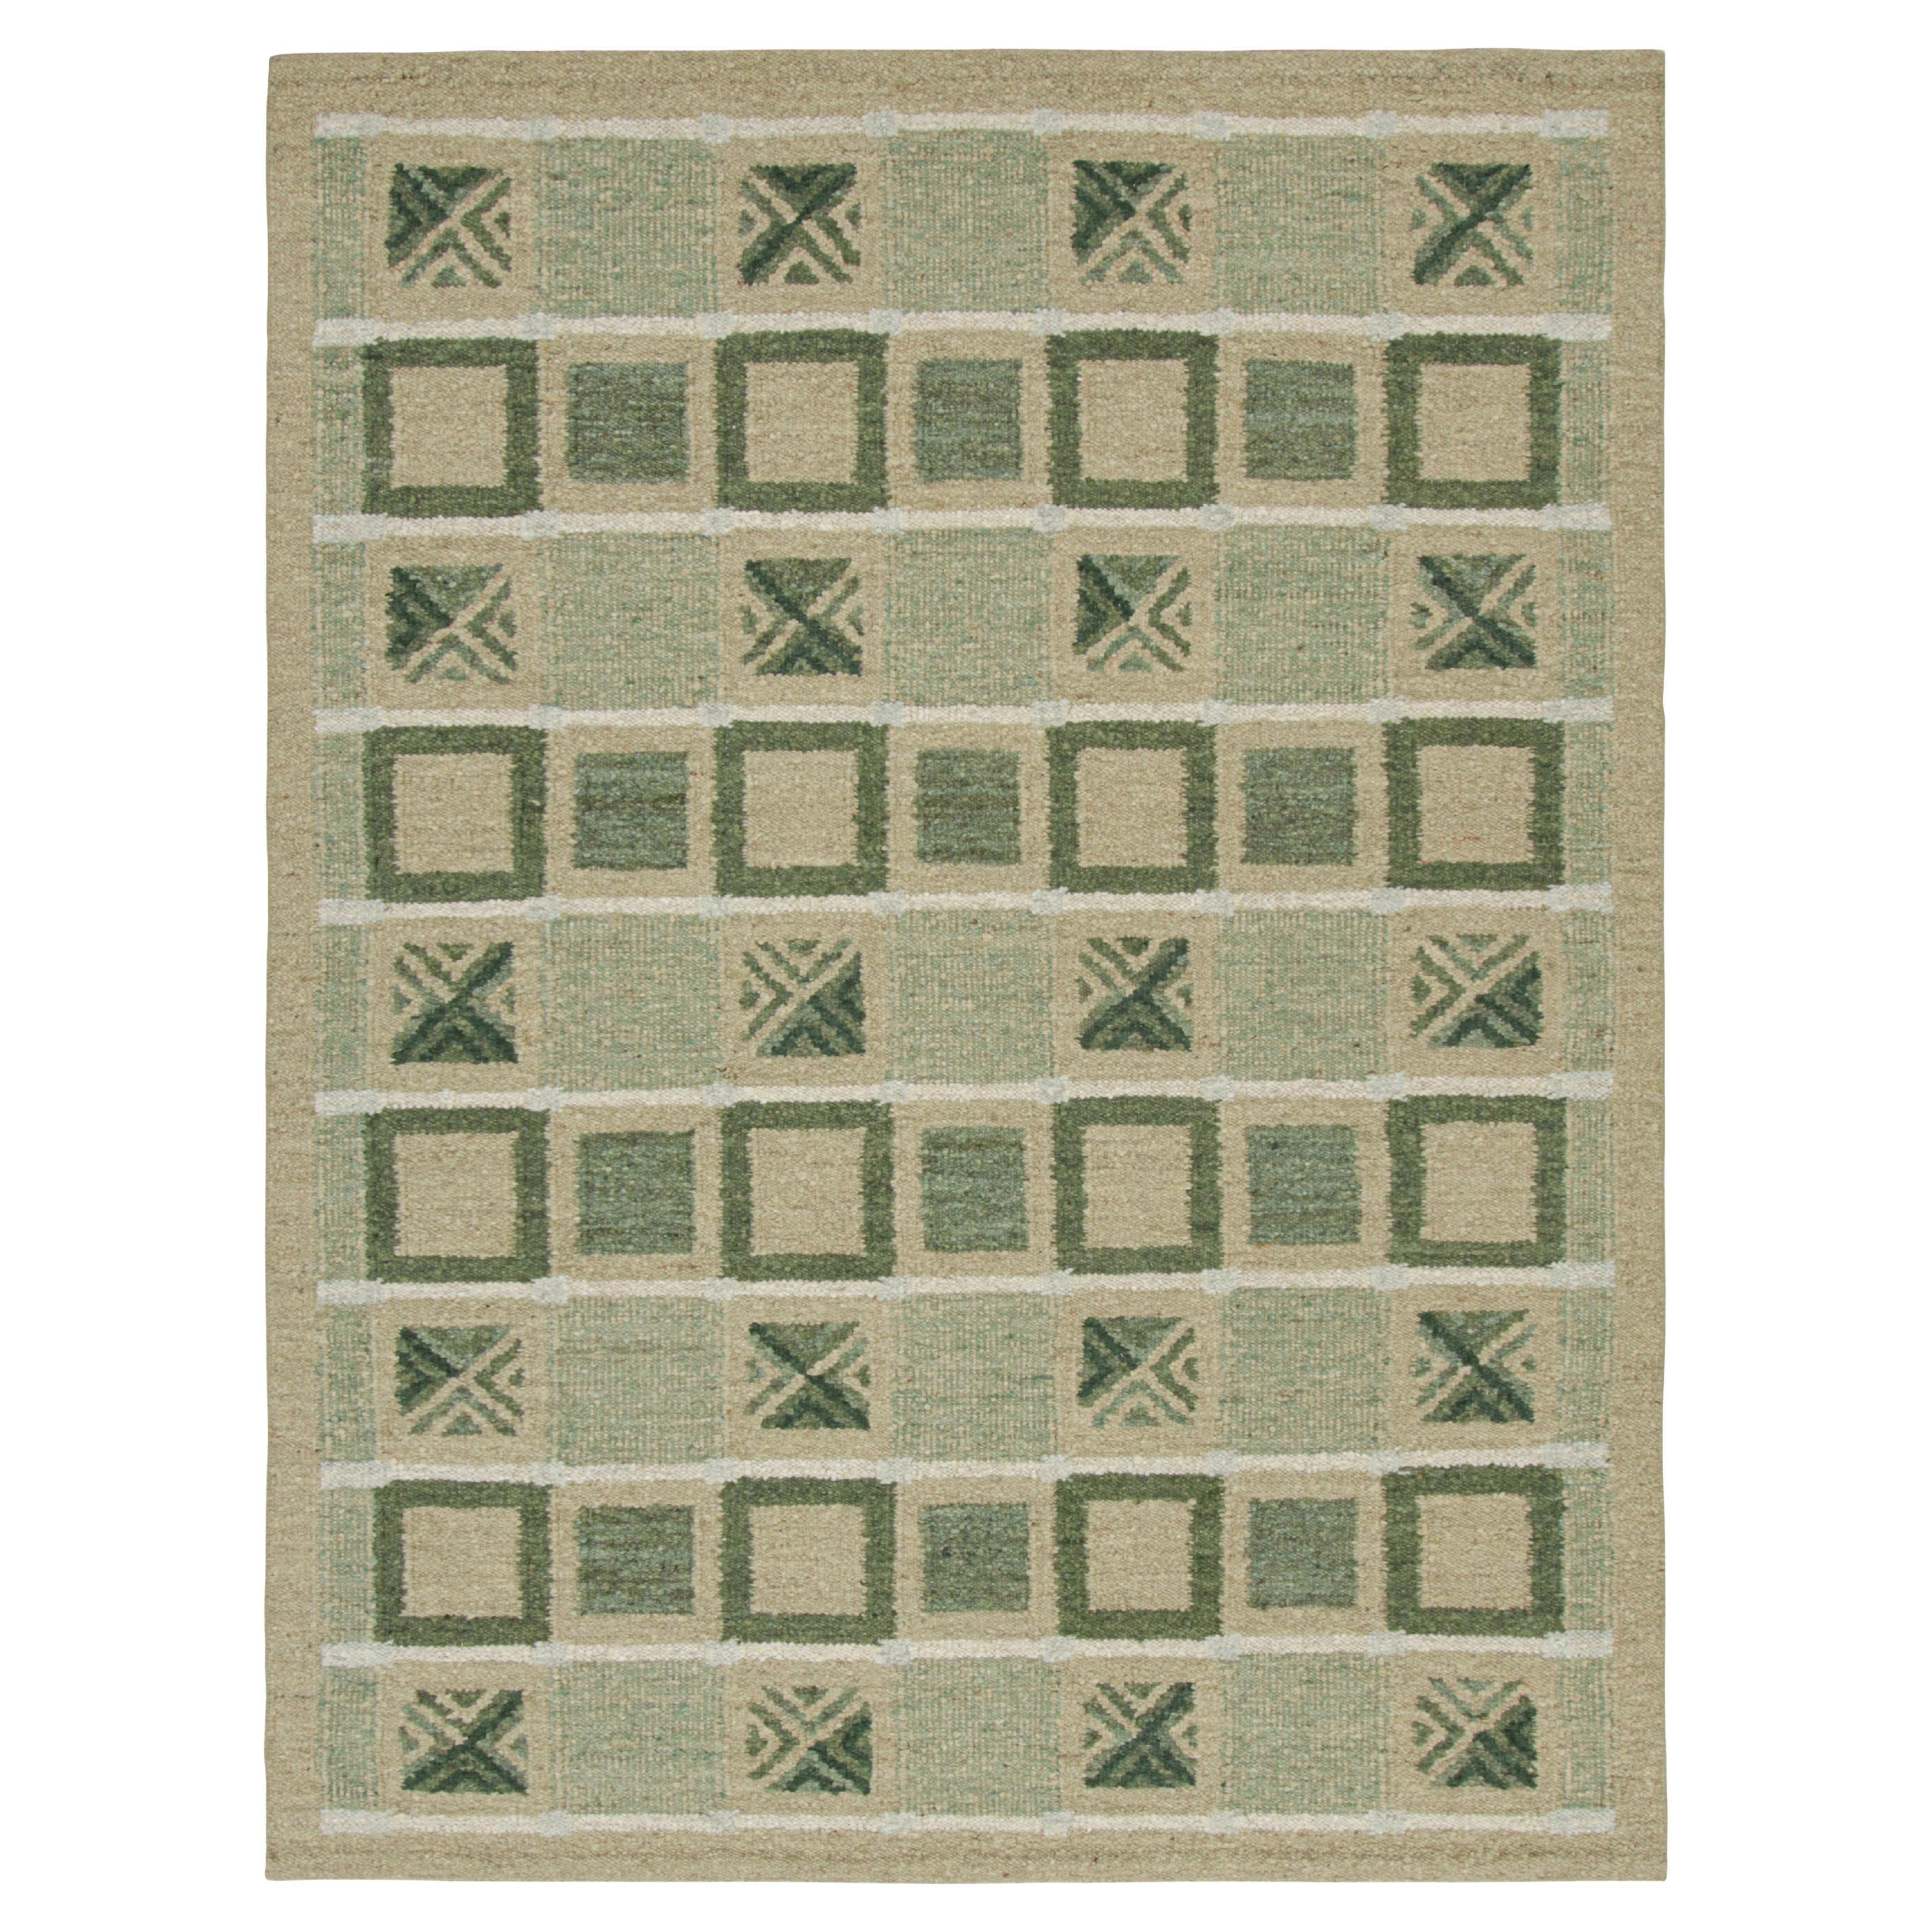 Rug & Kilim's Teppich im skandinavischen Stil mit grünen, beige-braunen geometrischen Mustern